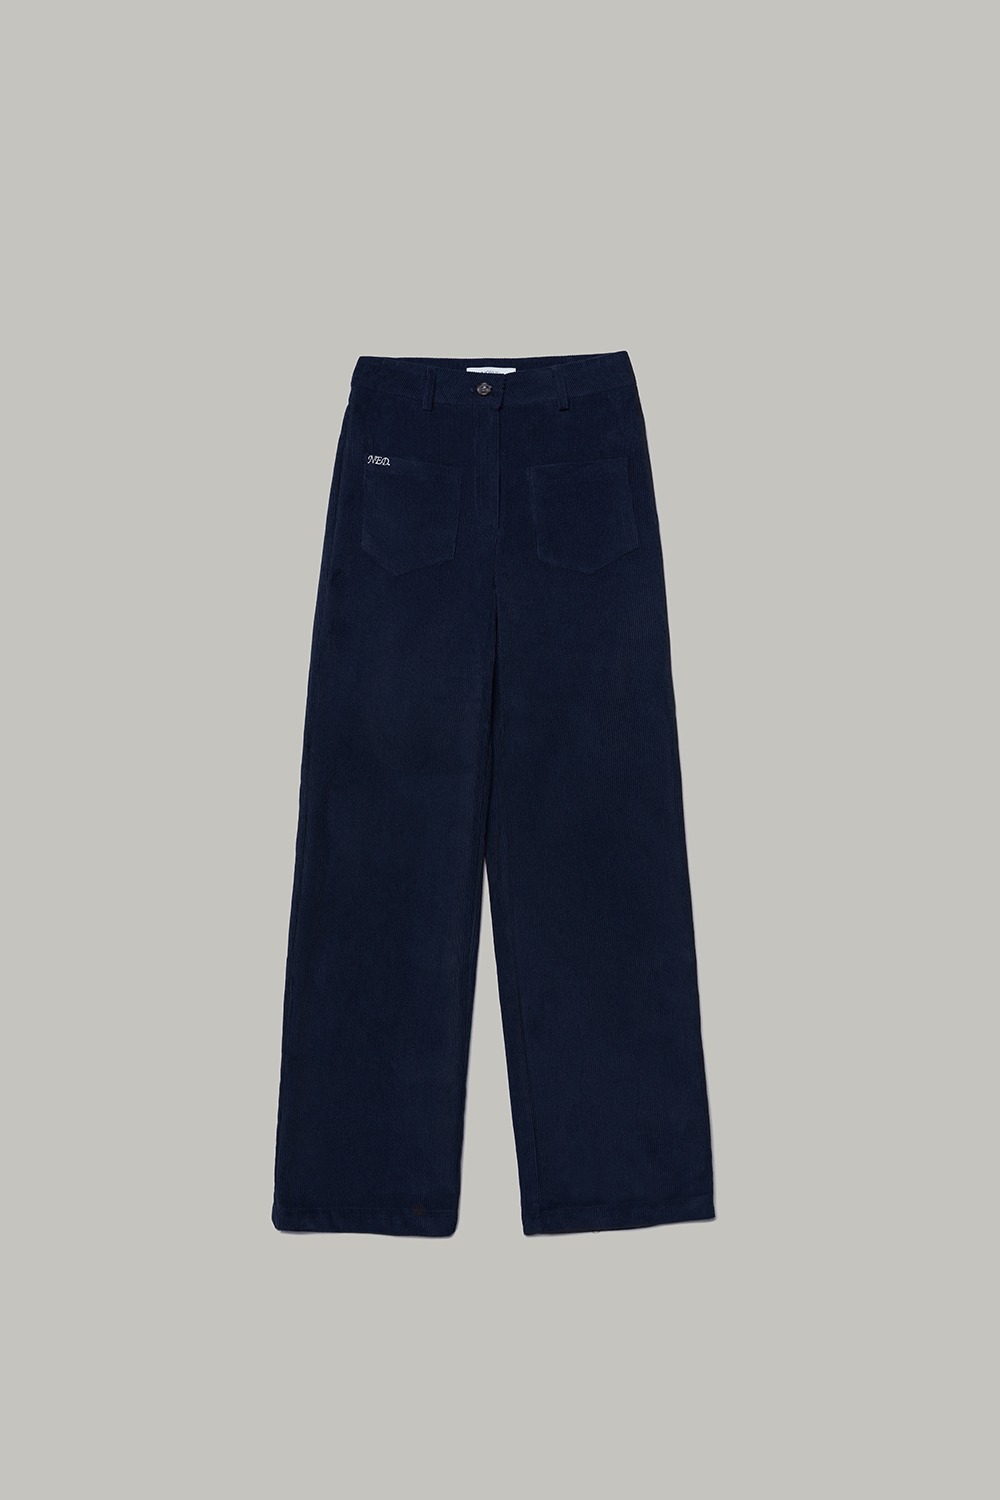 2nd/Jackie corduroy pants (Navy)